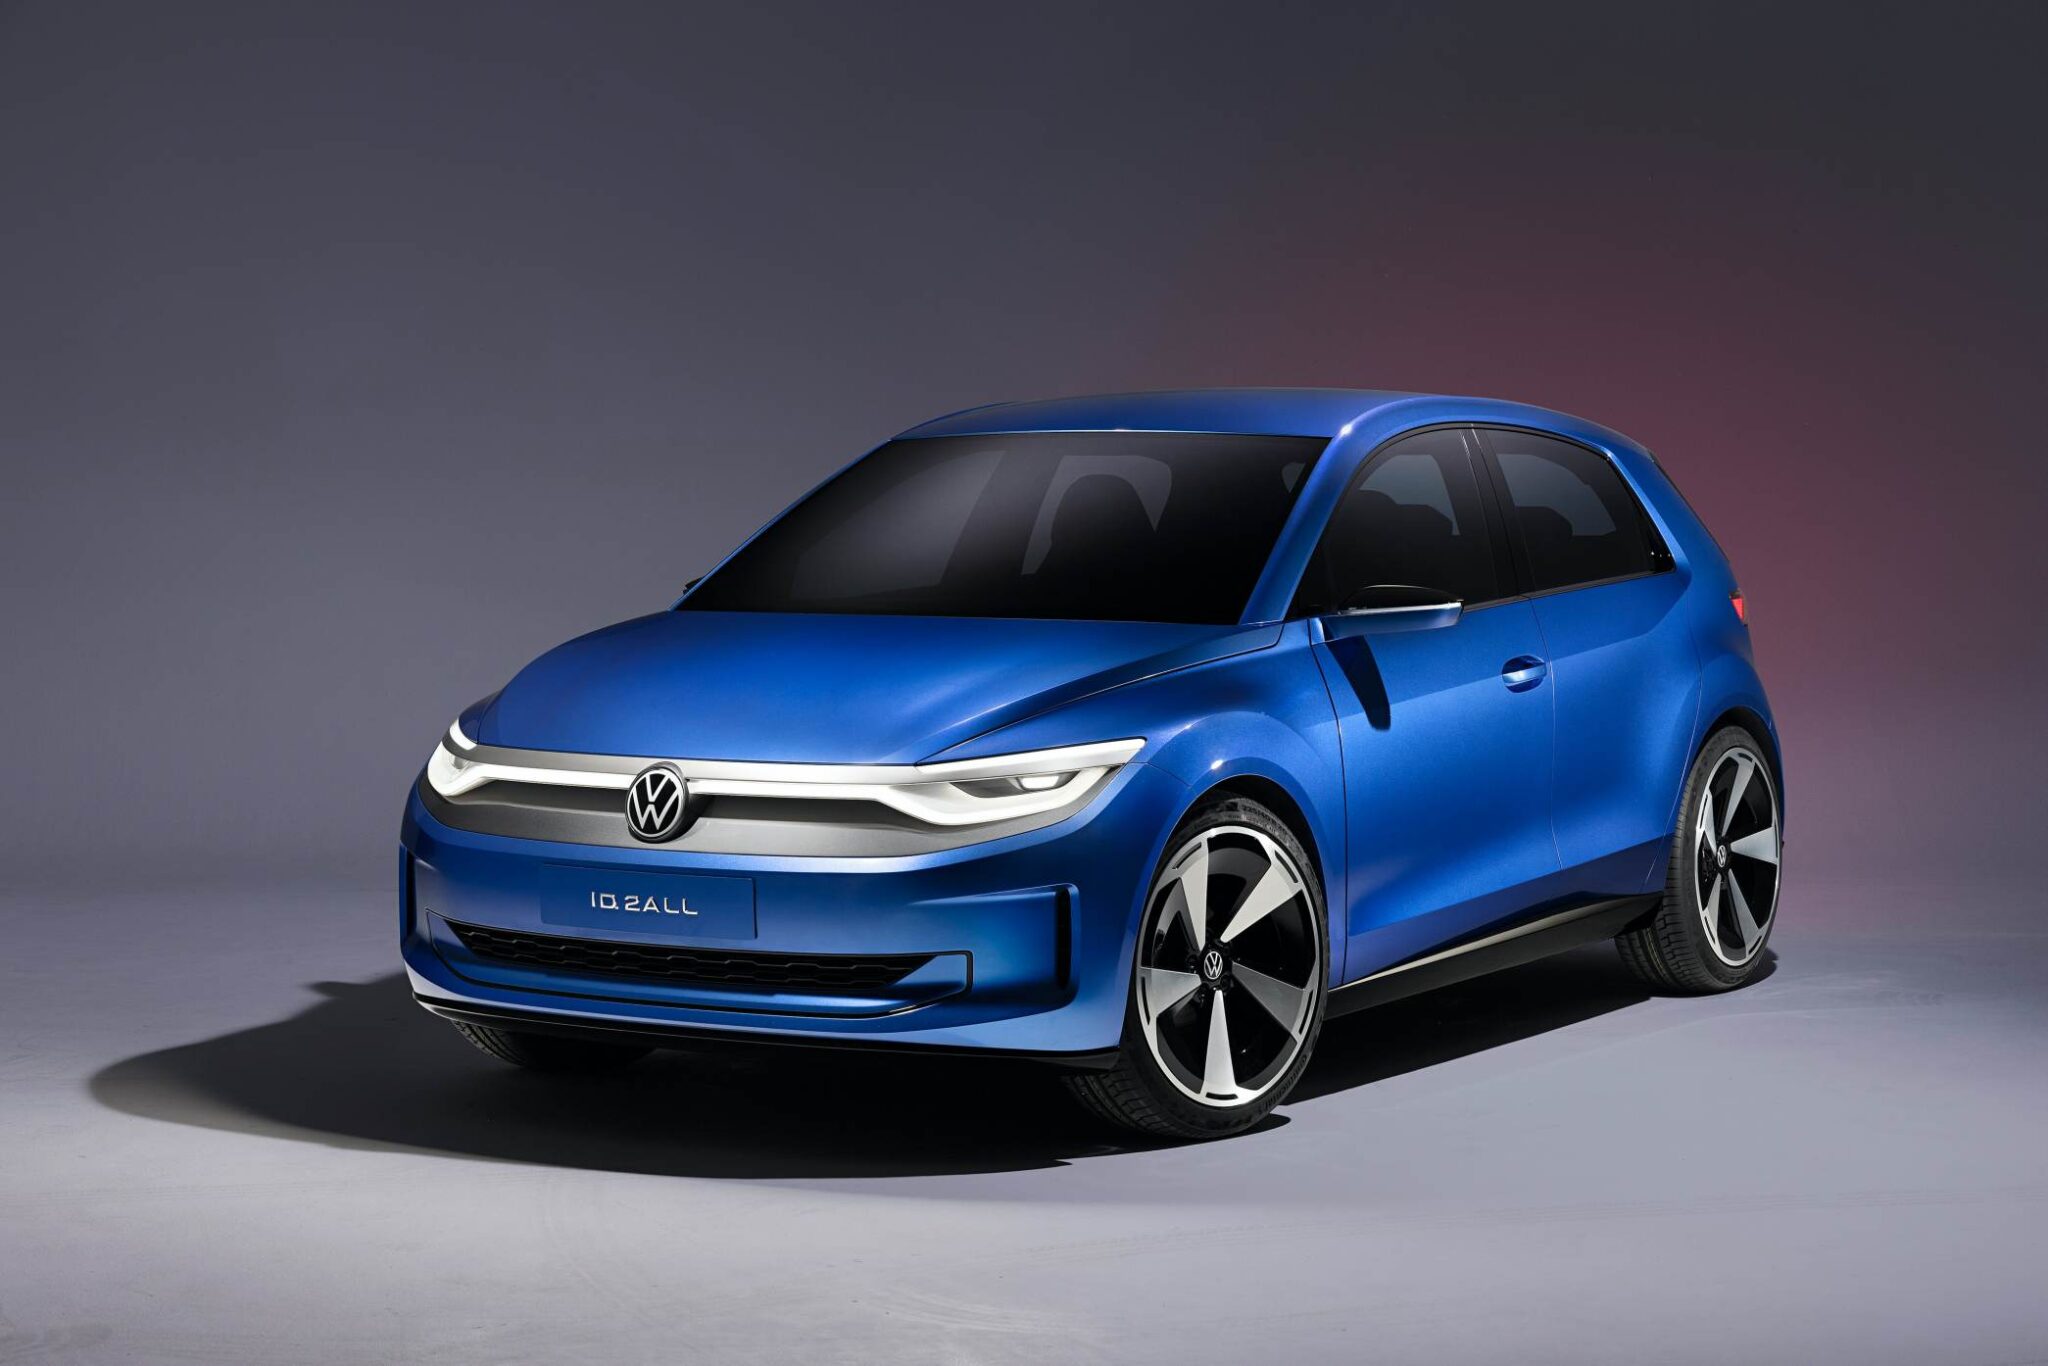 Volkswagen Id2all O Novo Elétrico Chega Em 2025 Com Preço Arrasador